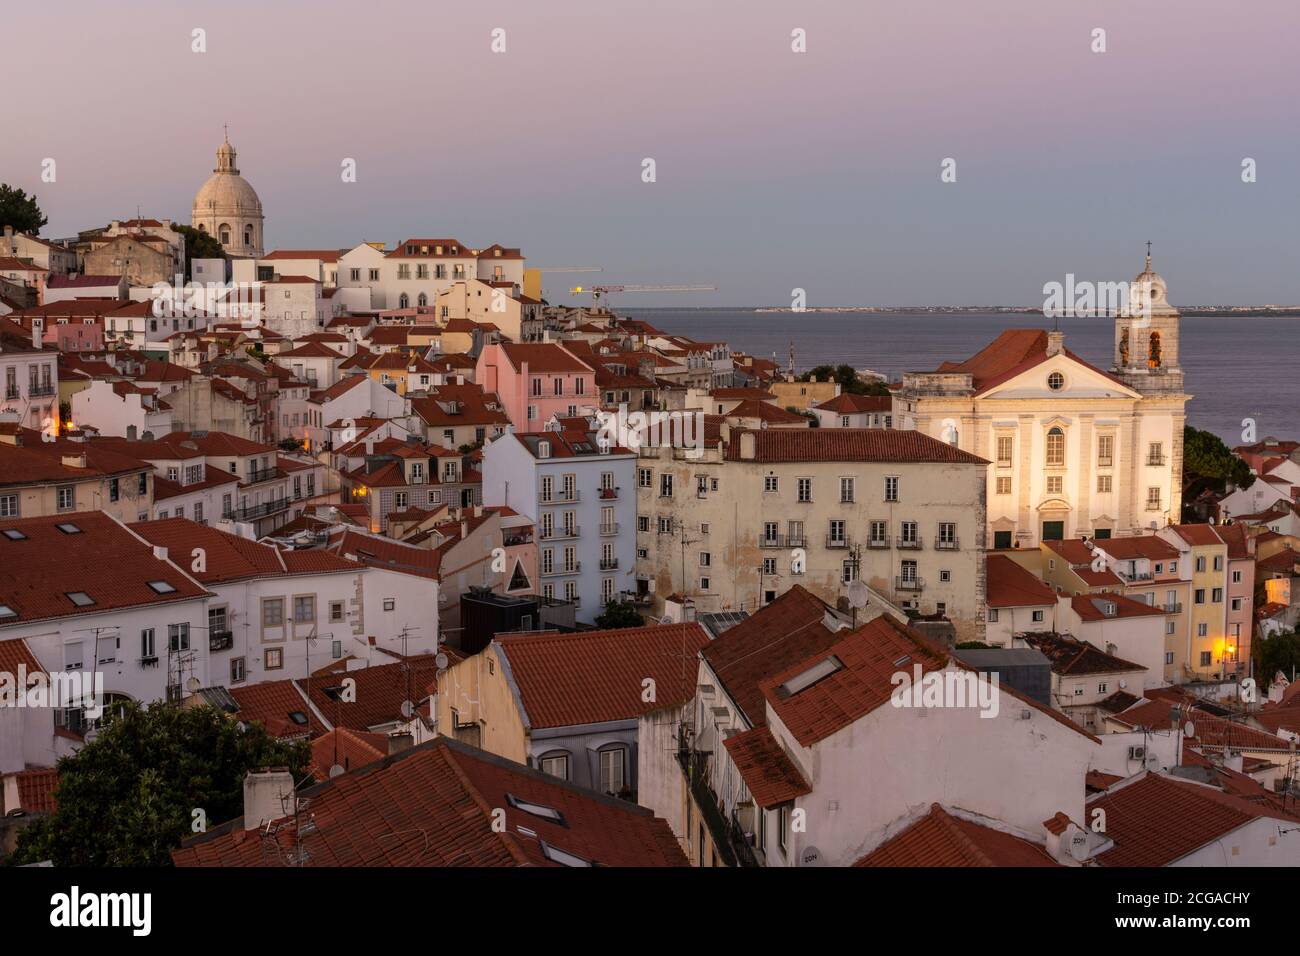 Belle vue sur les vieux bâtiments de la ville historique dans le centre de Lisbonne, Portugal Banque D'Images